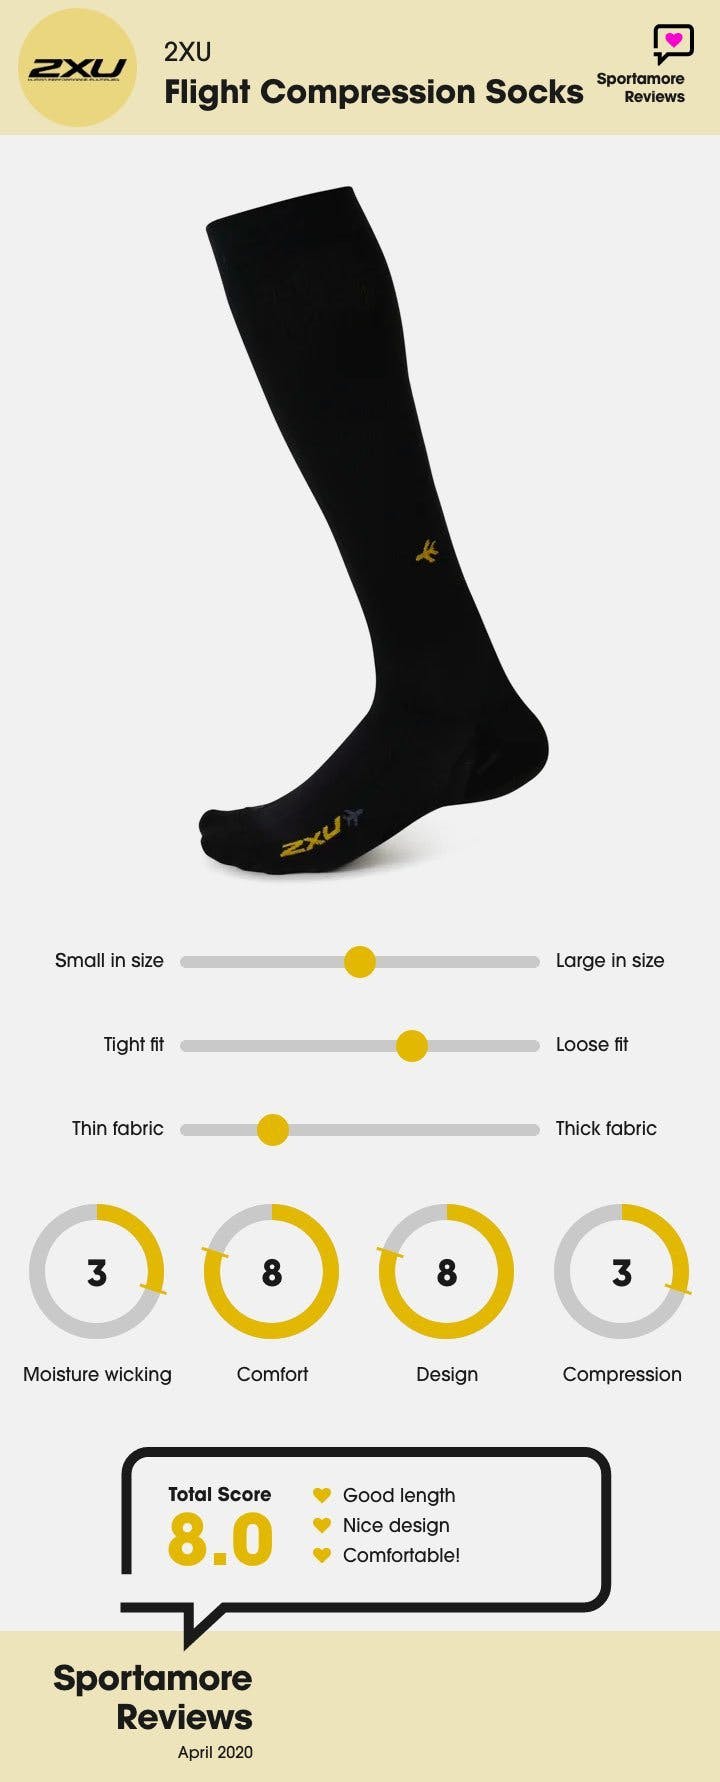 2xu flight compression sock